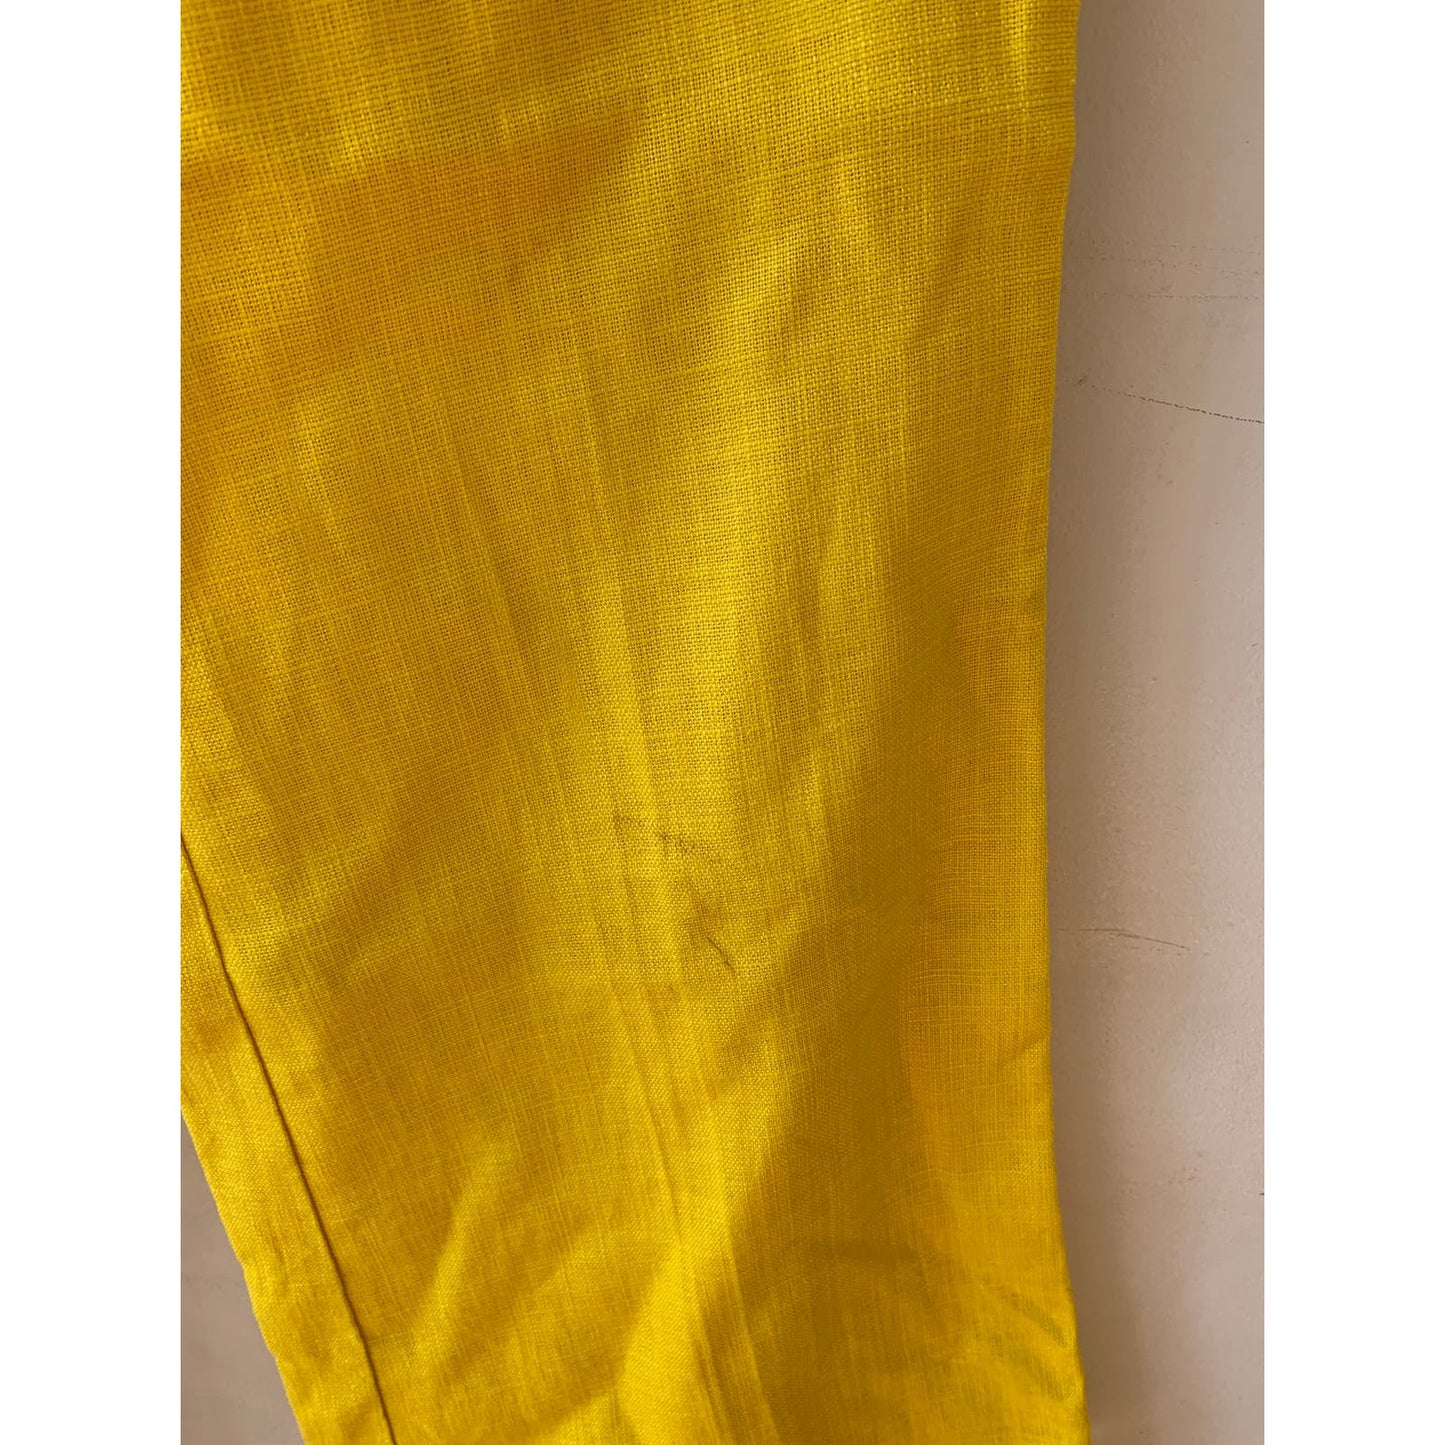 Cartonnier Anthropologie Linen Blend Wide Leg High Rise Yellow Trouser Pants 14